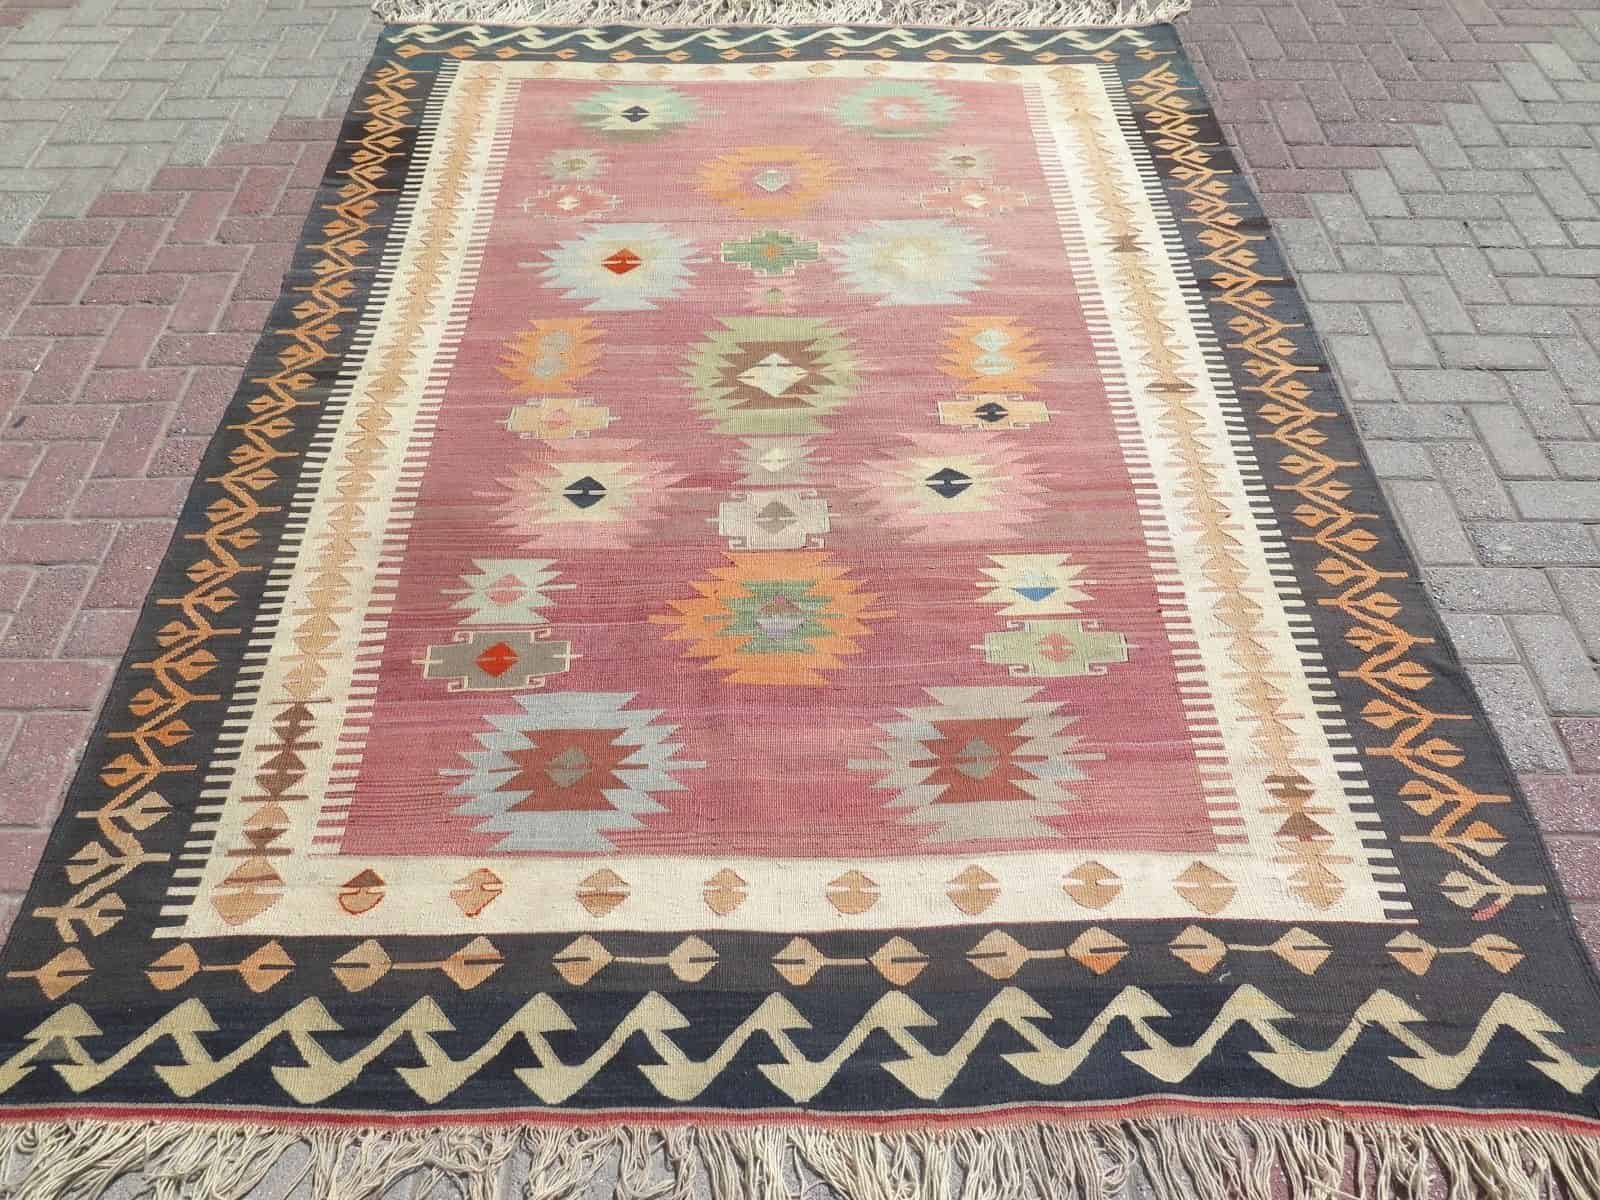 turkish-kilim-wool-area-rug-black-border-pastel-colors.jpg